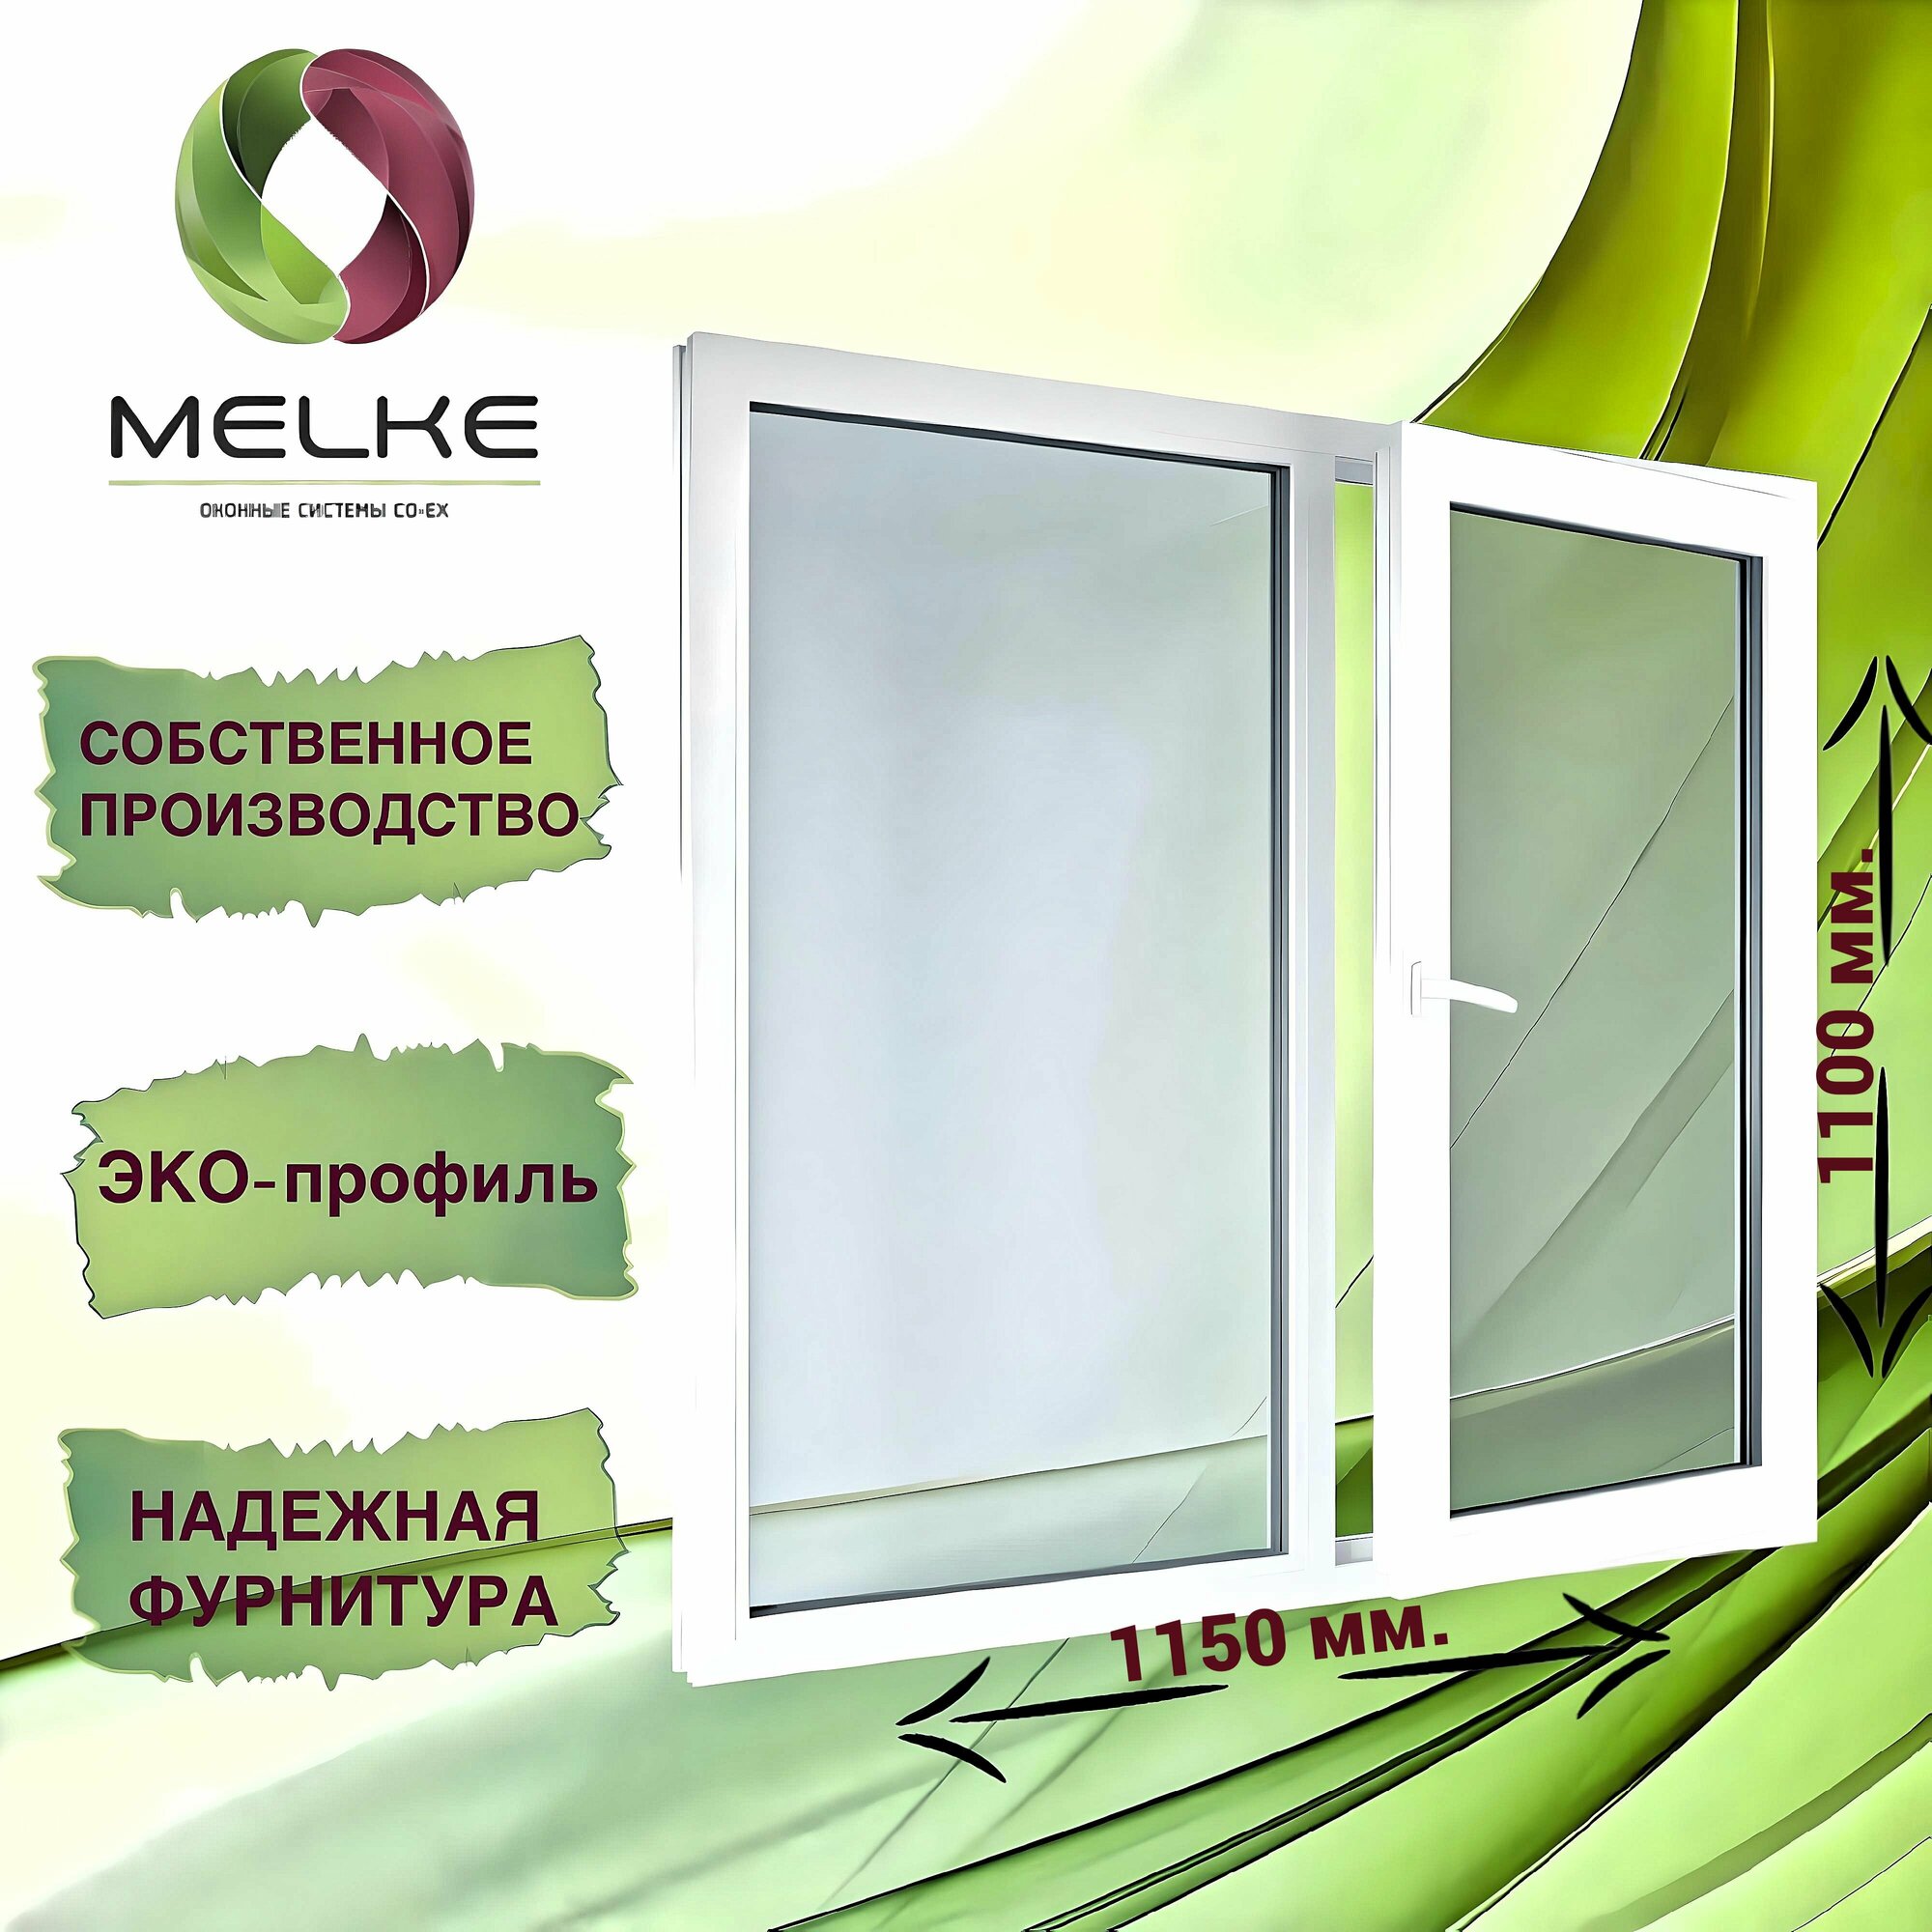 Окно 1100 x 1150 мм, профиль Melke 60 (Фурнитура FUTURUSS), двухстворчатое, с поворотно-откидной правой и глухой левой створками, 2-х камерный стеклопакет, 3 стекла